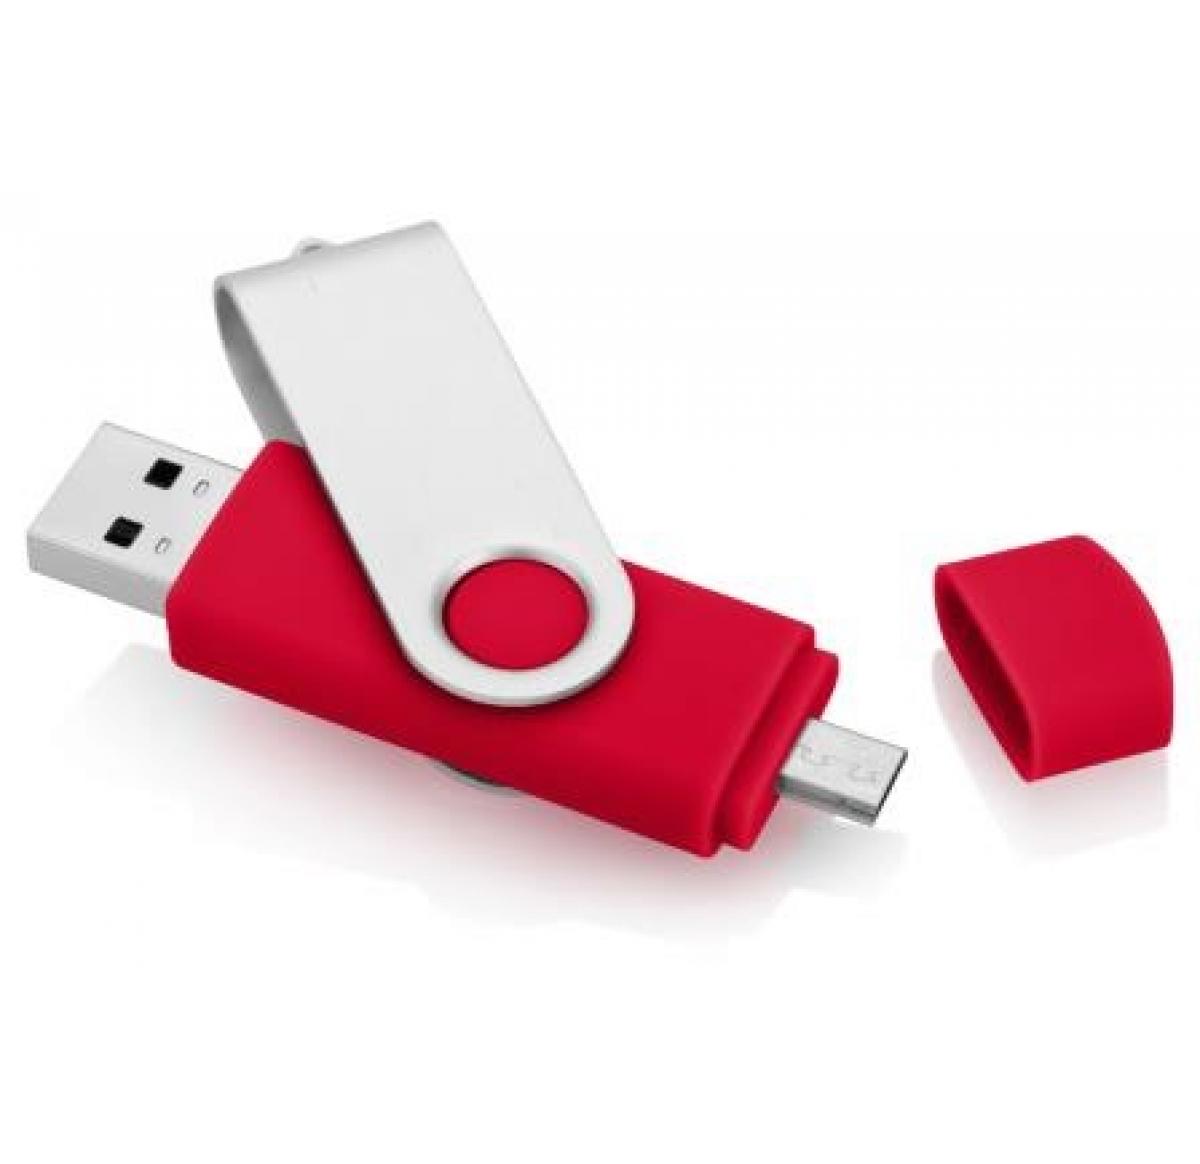 OTG USB Flash Drive 